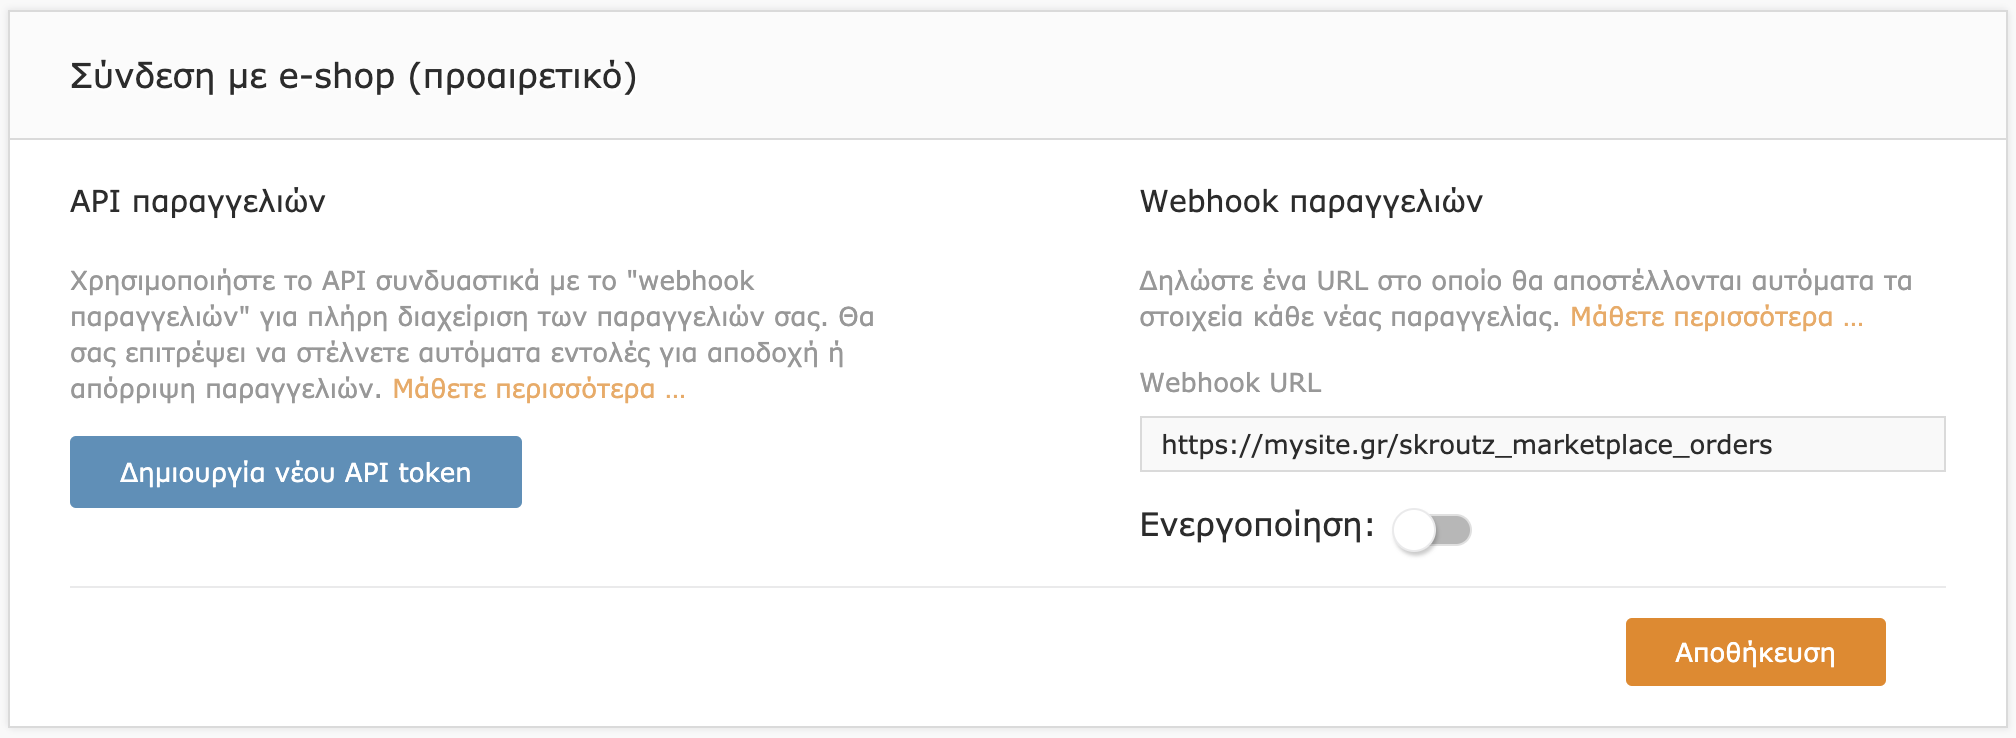 Υπηρεσία webhook παραγγελιών απενεργοποιημένη